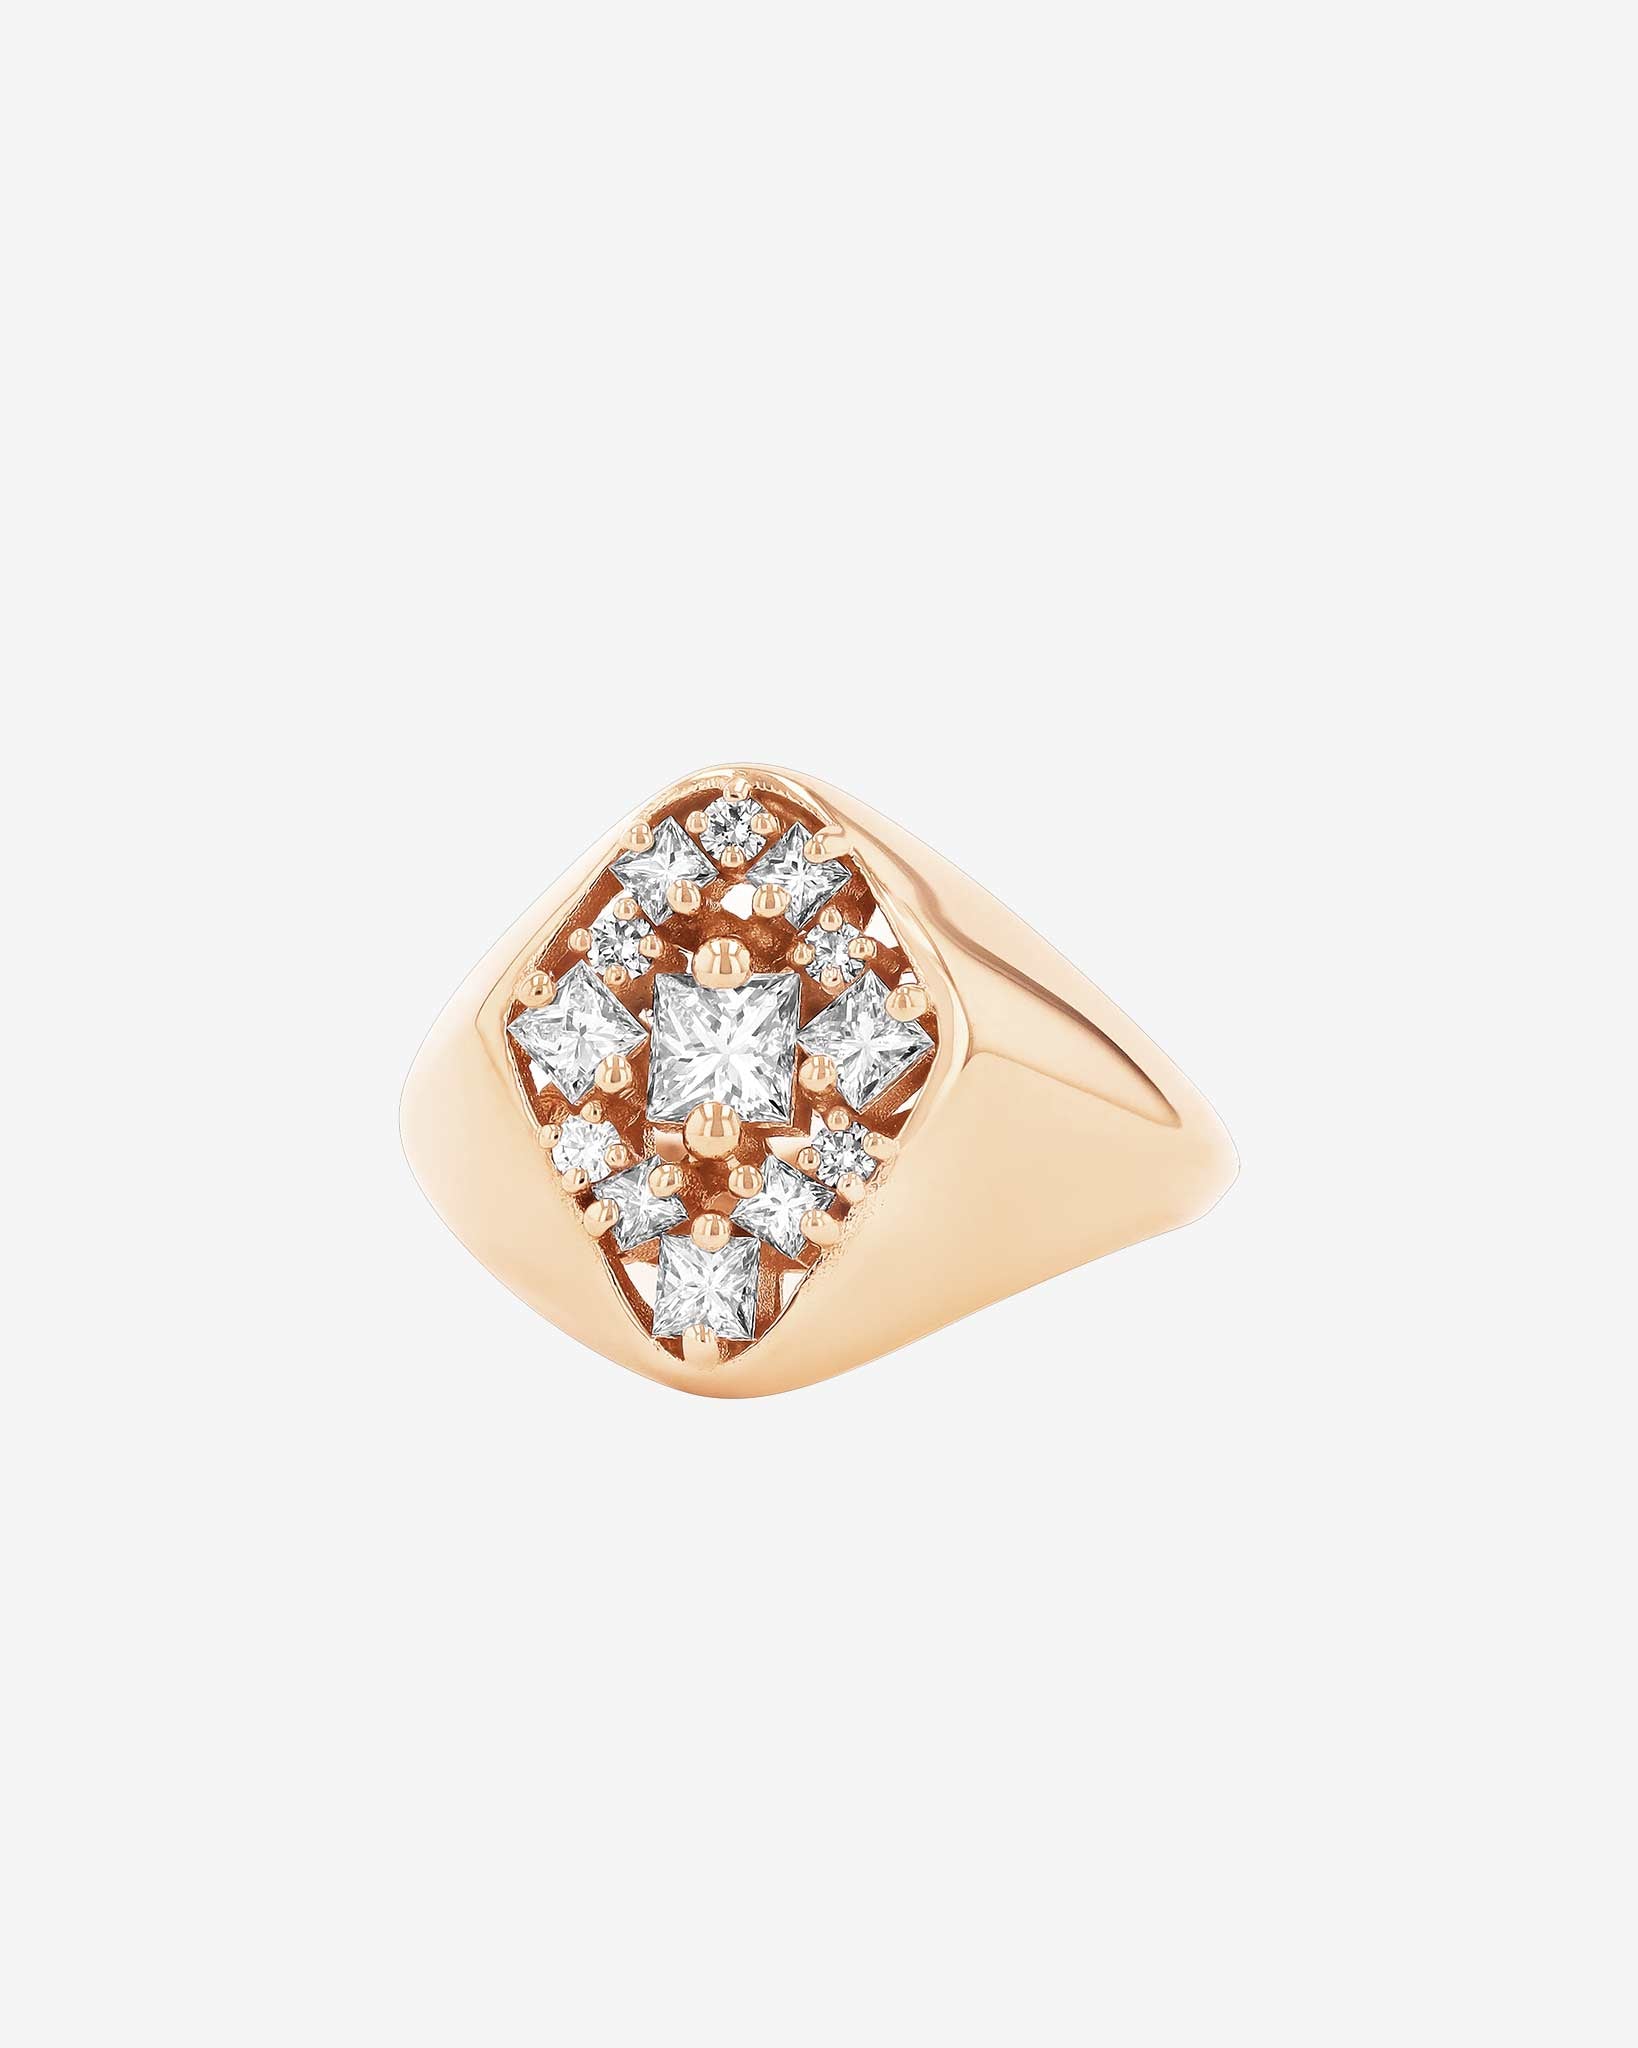 Suzanne Kalan La Fantaisie Star Diamond Signet Ring in 18k rose gold